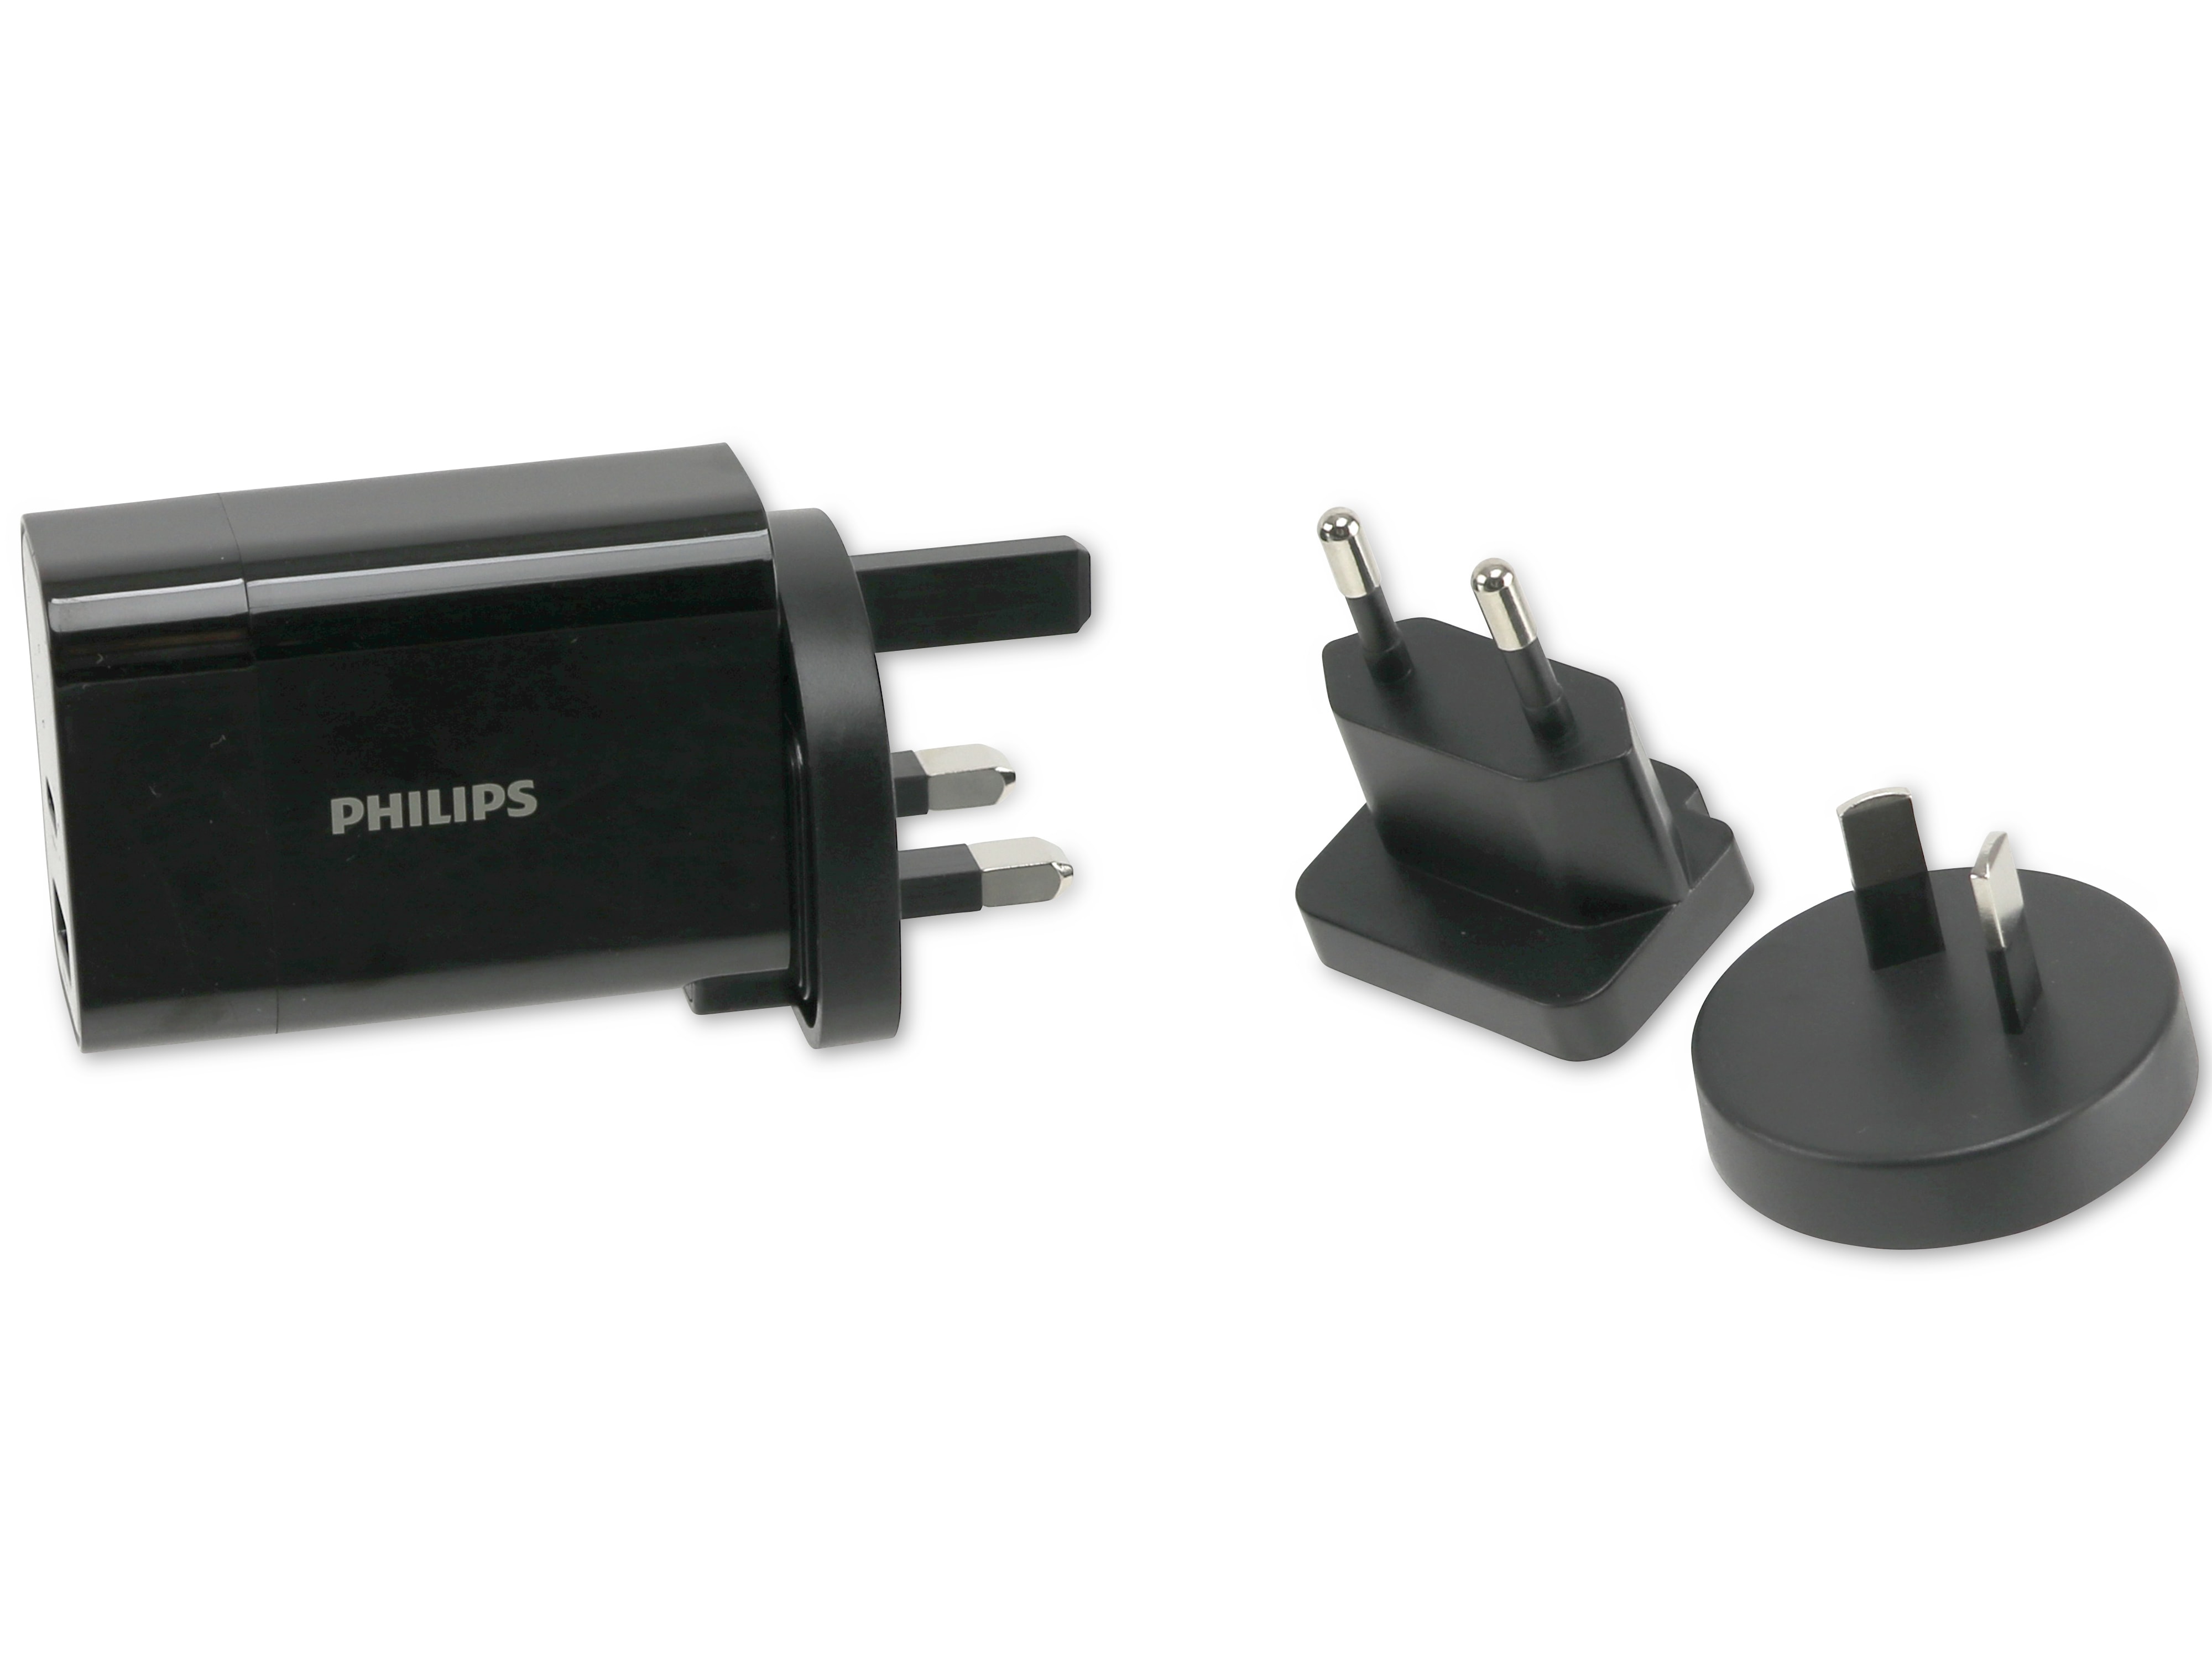 PHILIPS USB-Reiselader 2-fach, 30W, 4 tauschbare Stecker für EU, US, AU, UK